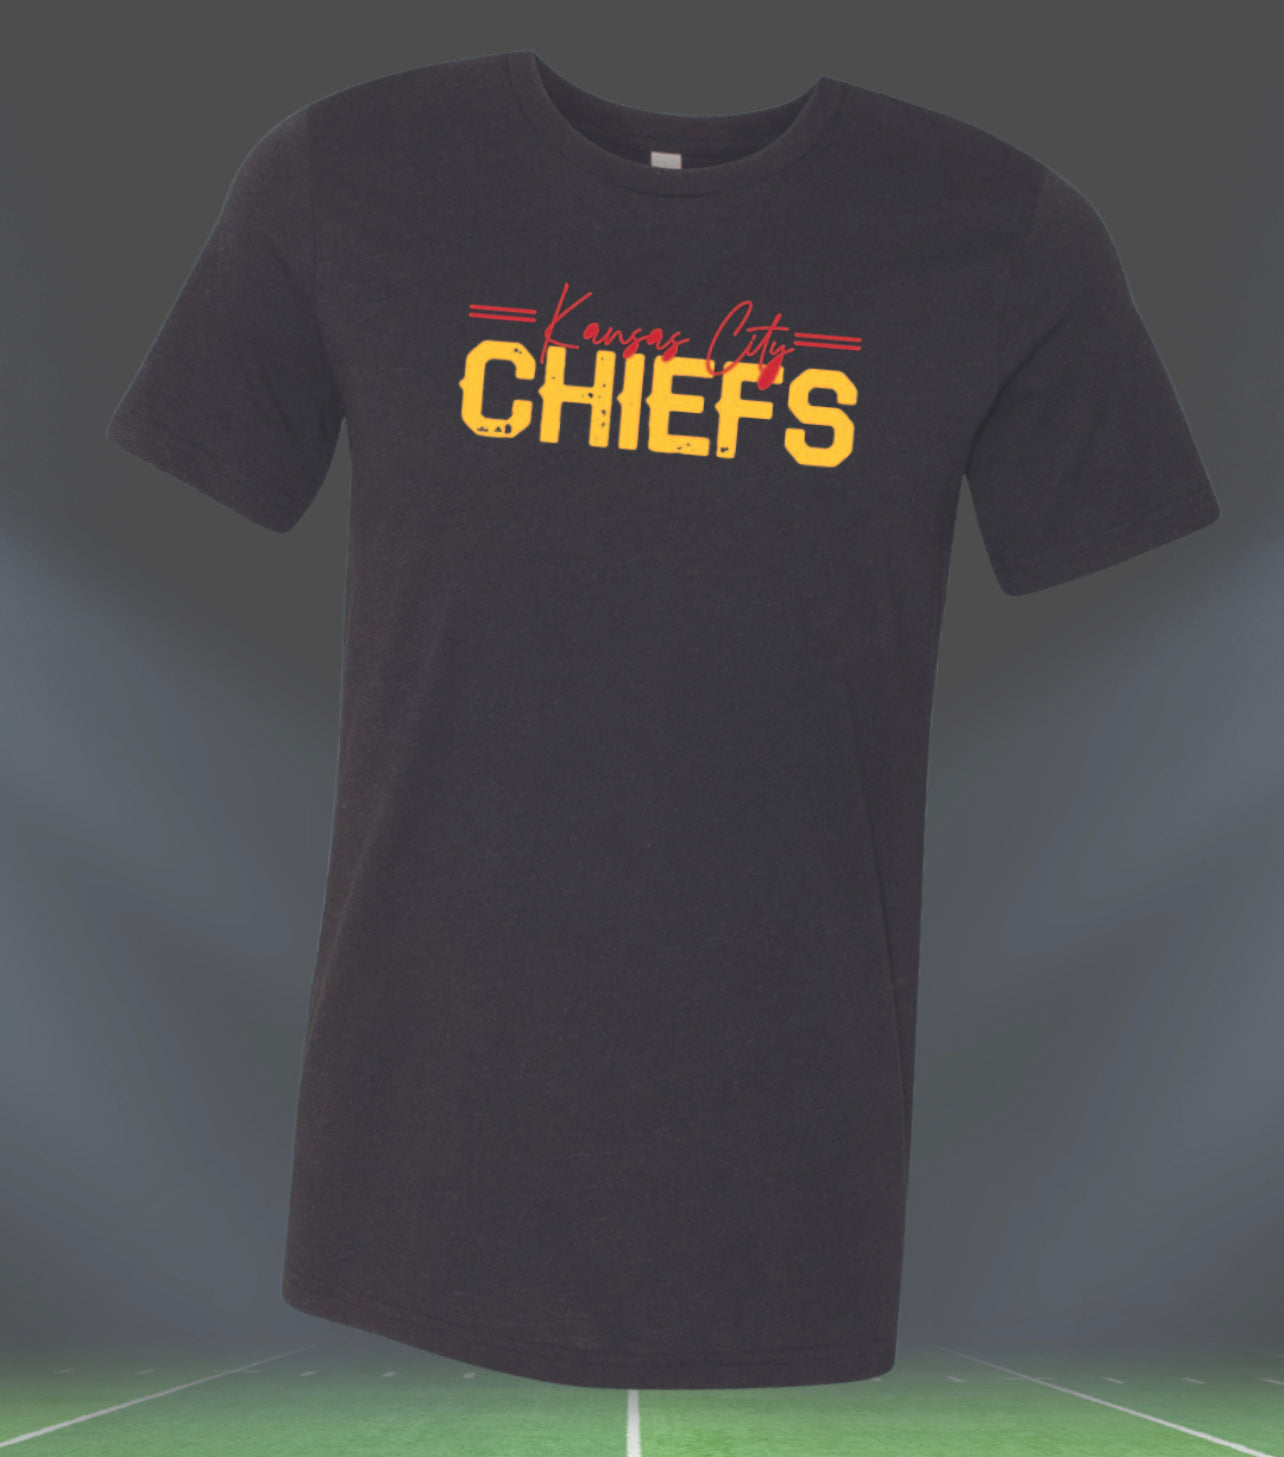 Cursive Kansas City Over Chiefs Sweatshirt – Belles Boutique